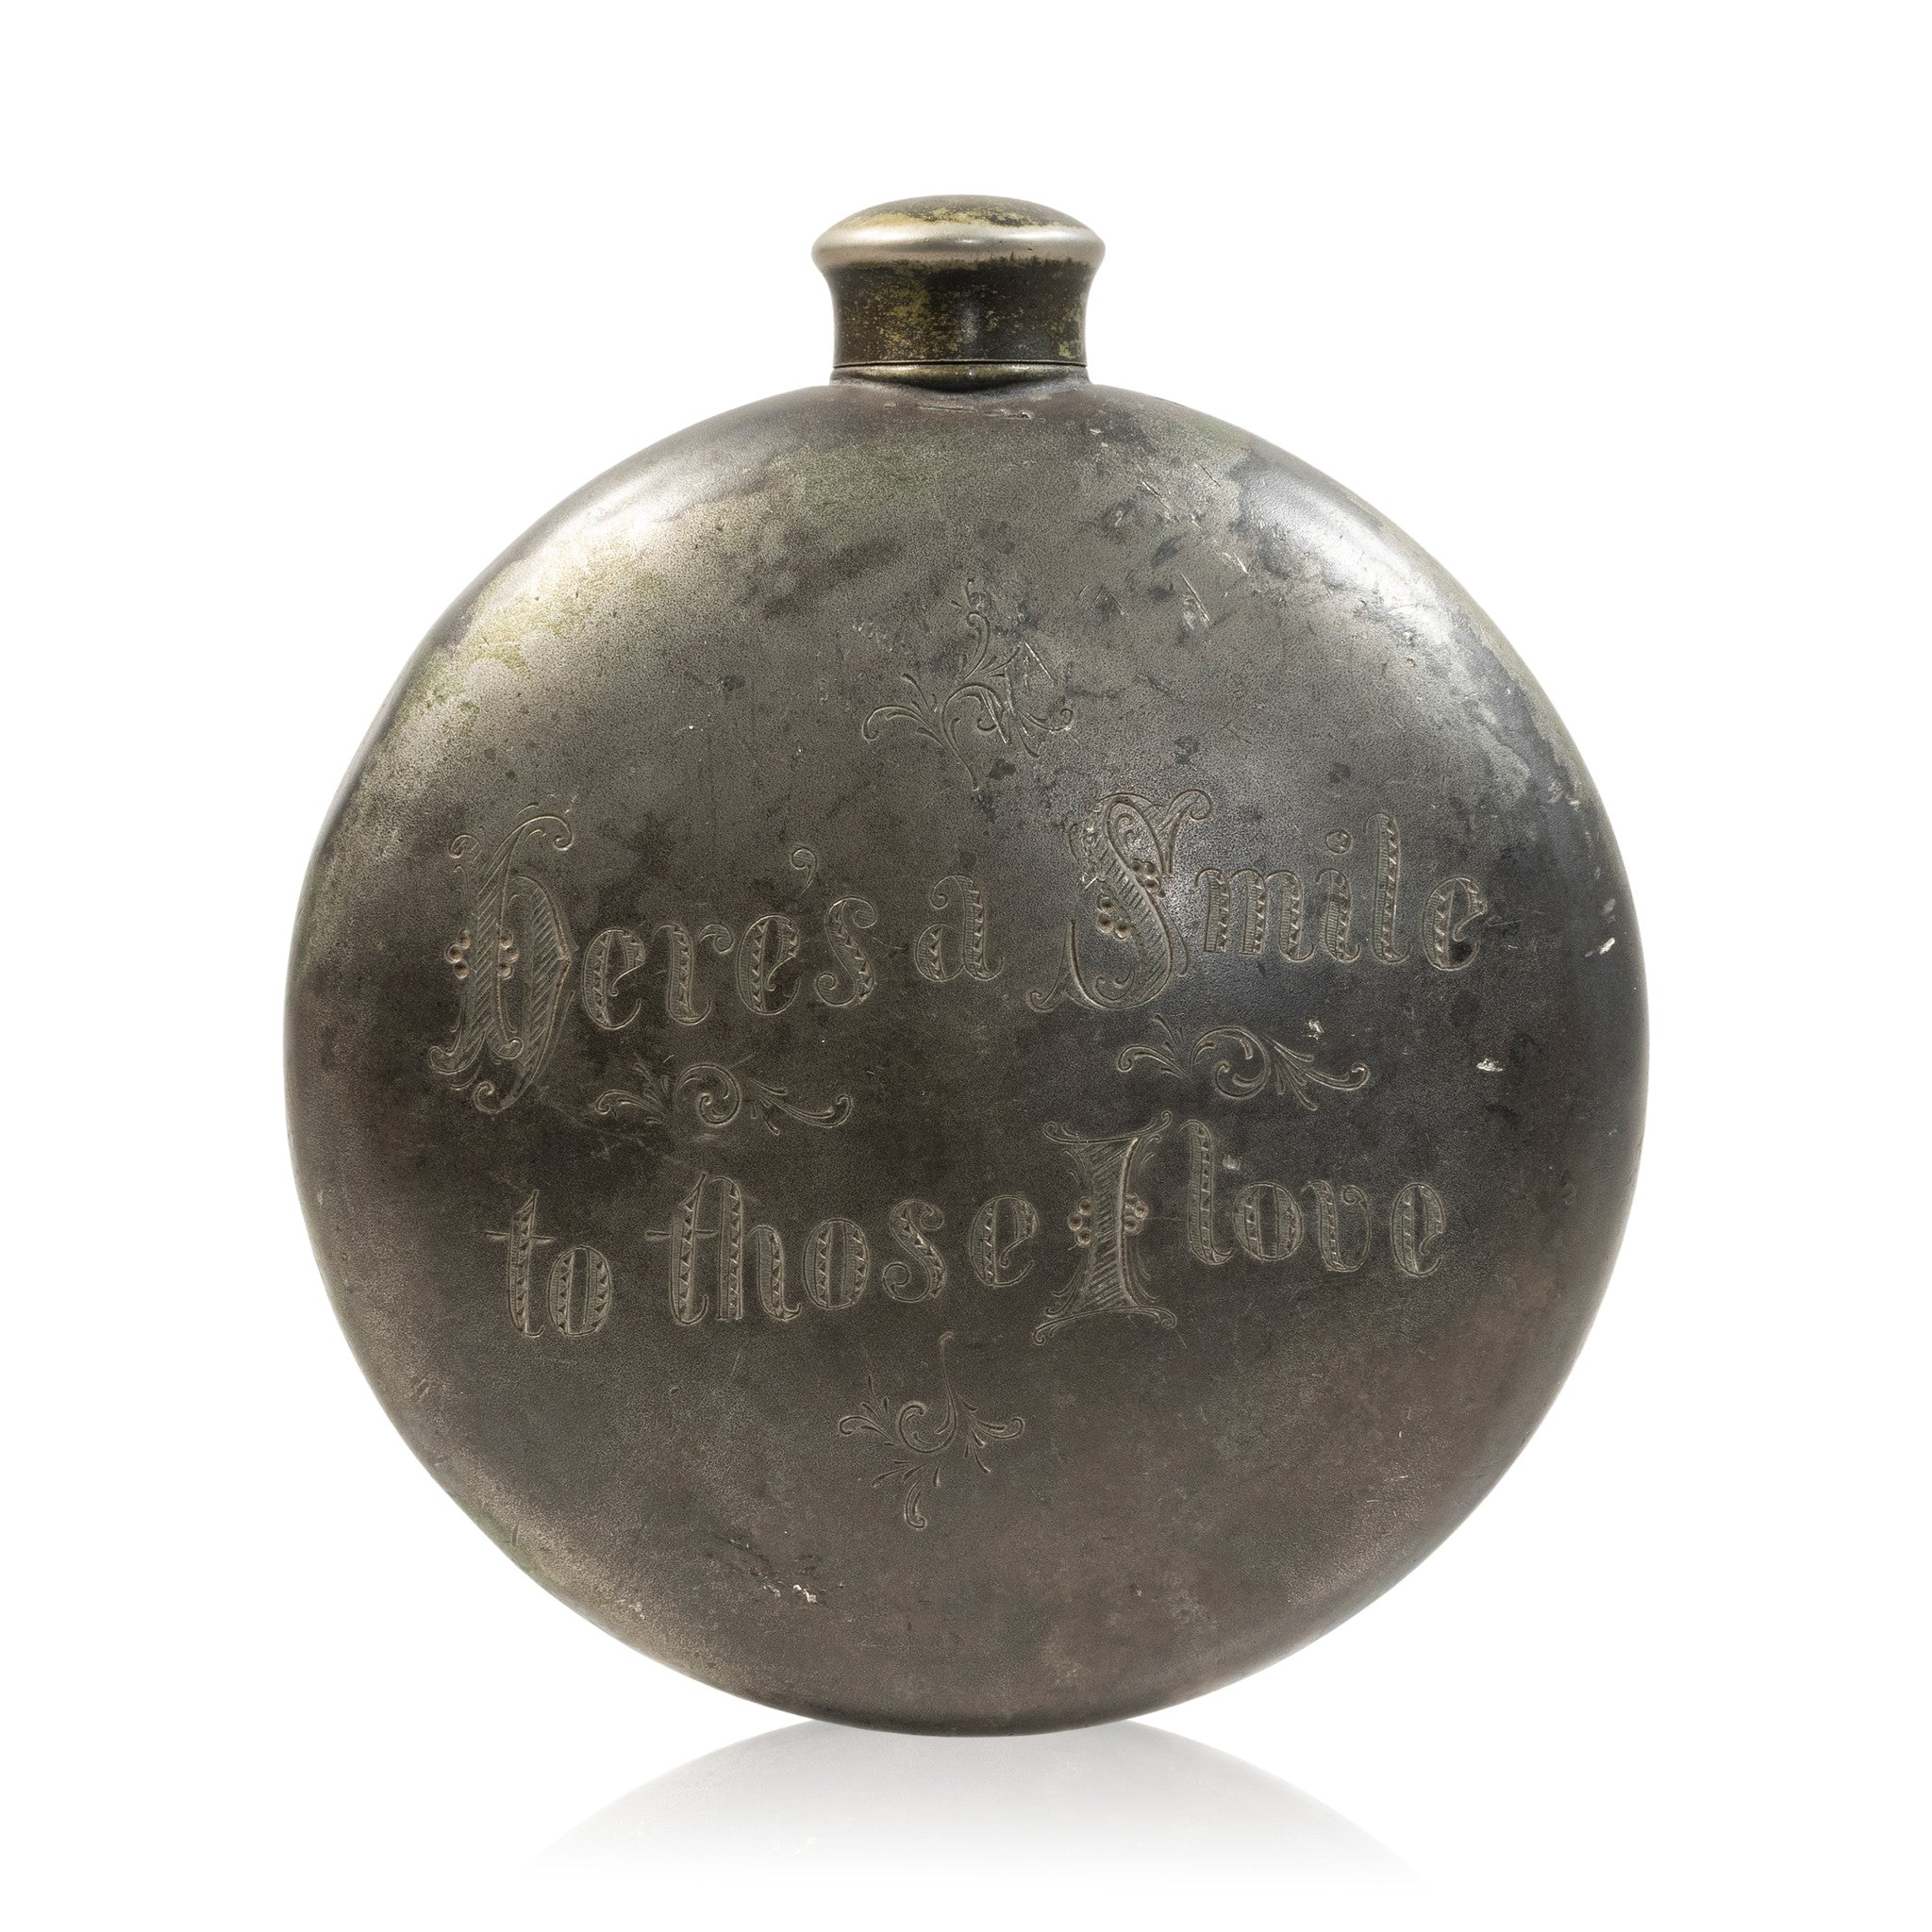 Engraved Pewter Flask, Furnishings, Barware, Flask